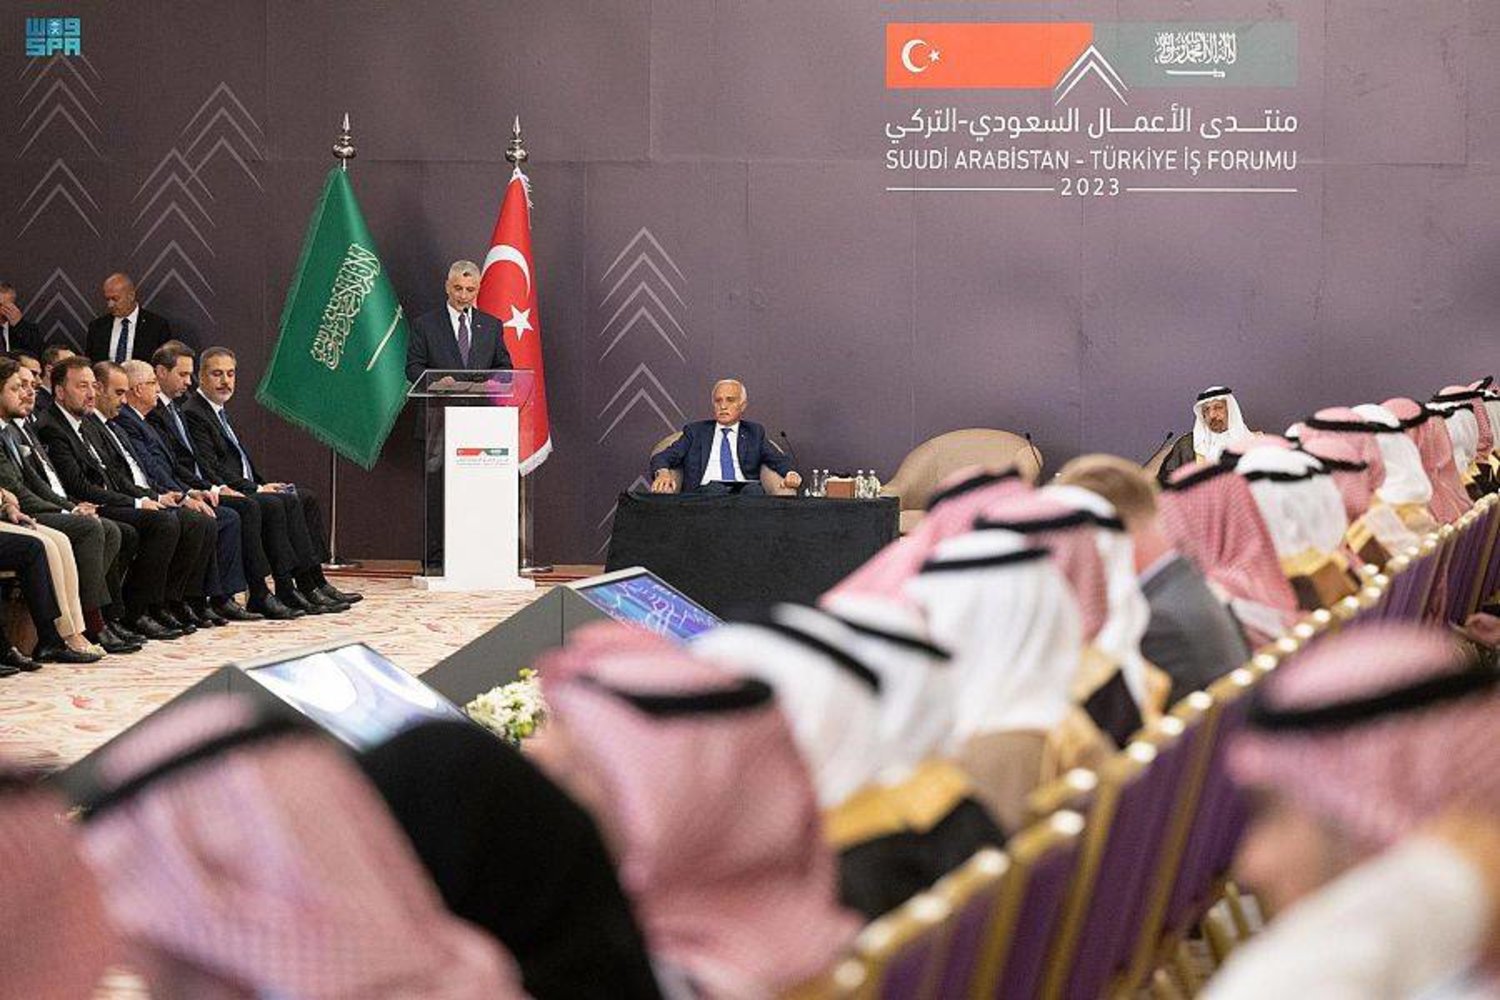 جانب من منتدى الاستثمار السعودي – التركي الذي عقد مؤخرًا في جدة (الشرق الأوسط)